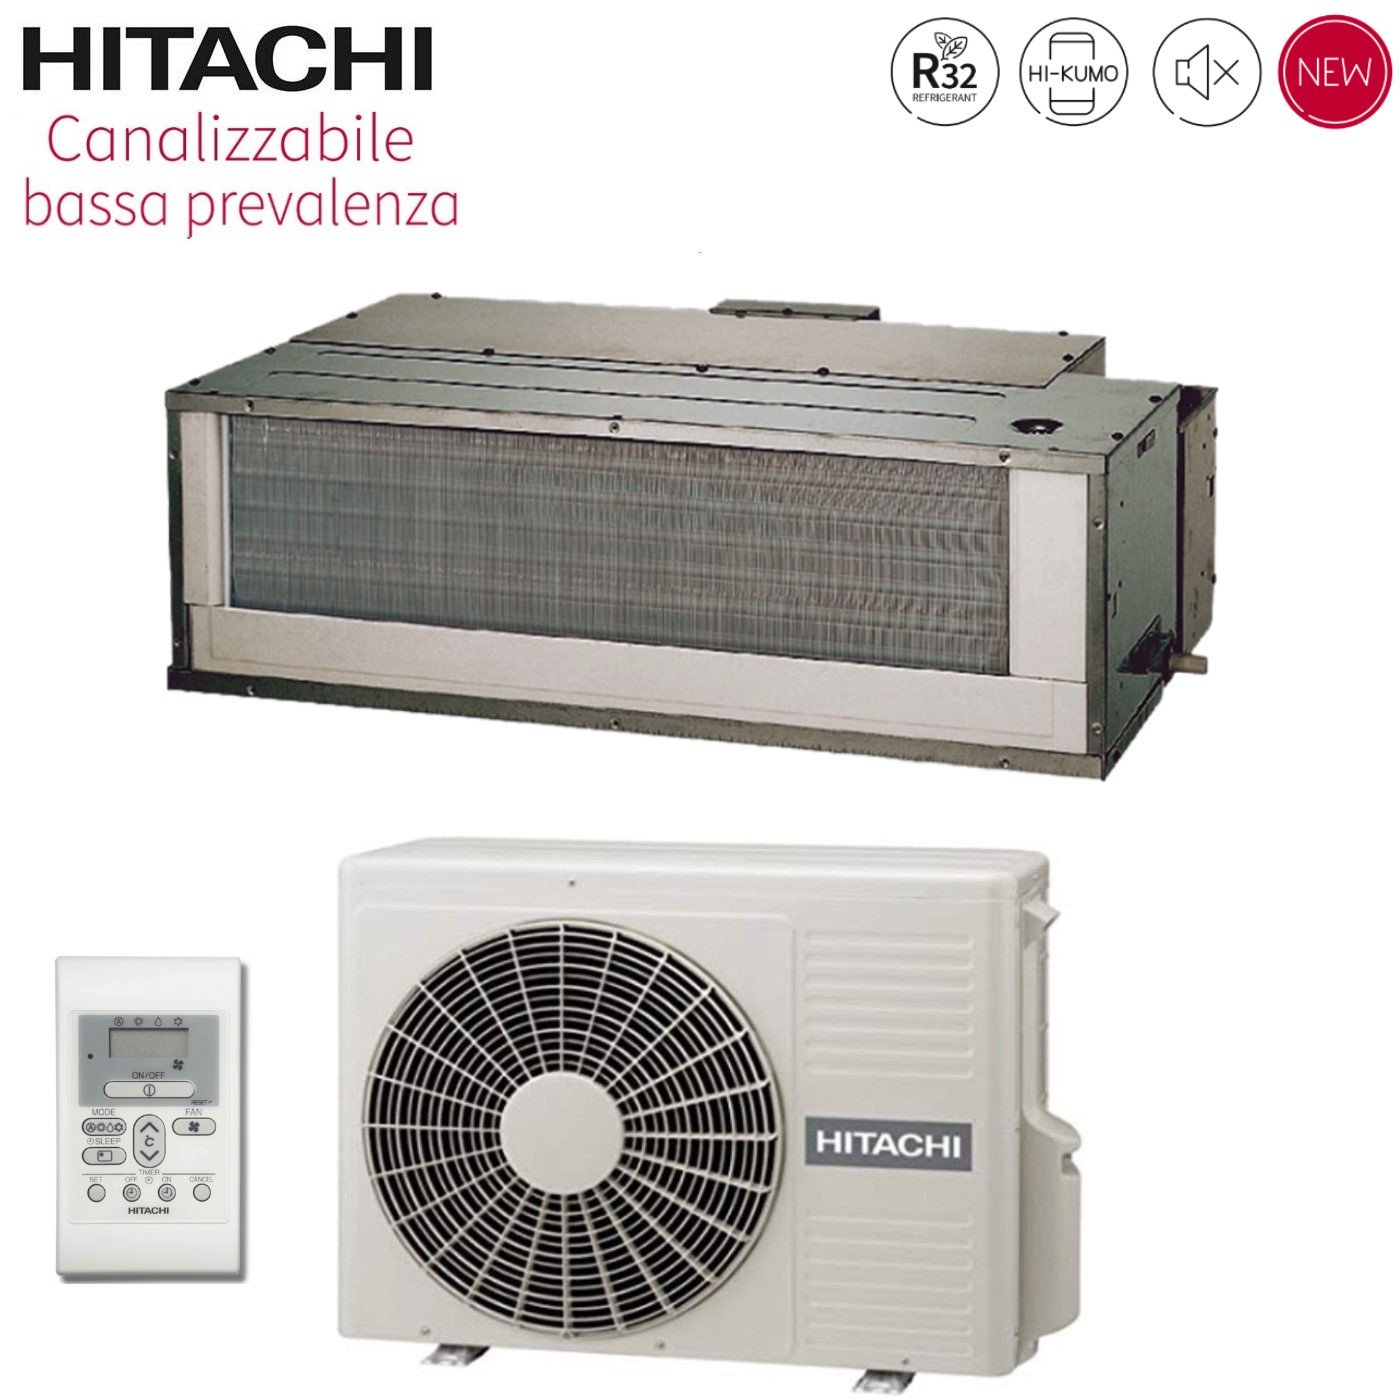 Climatizzatore Condizionatore Hitachi Inverter Canalizzato Bassa Prevalenza 12000 Btu RAD-35RPE R-32 Wi-Fi Optional con Comando a Parete - Novità